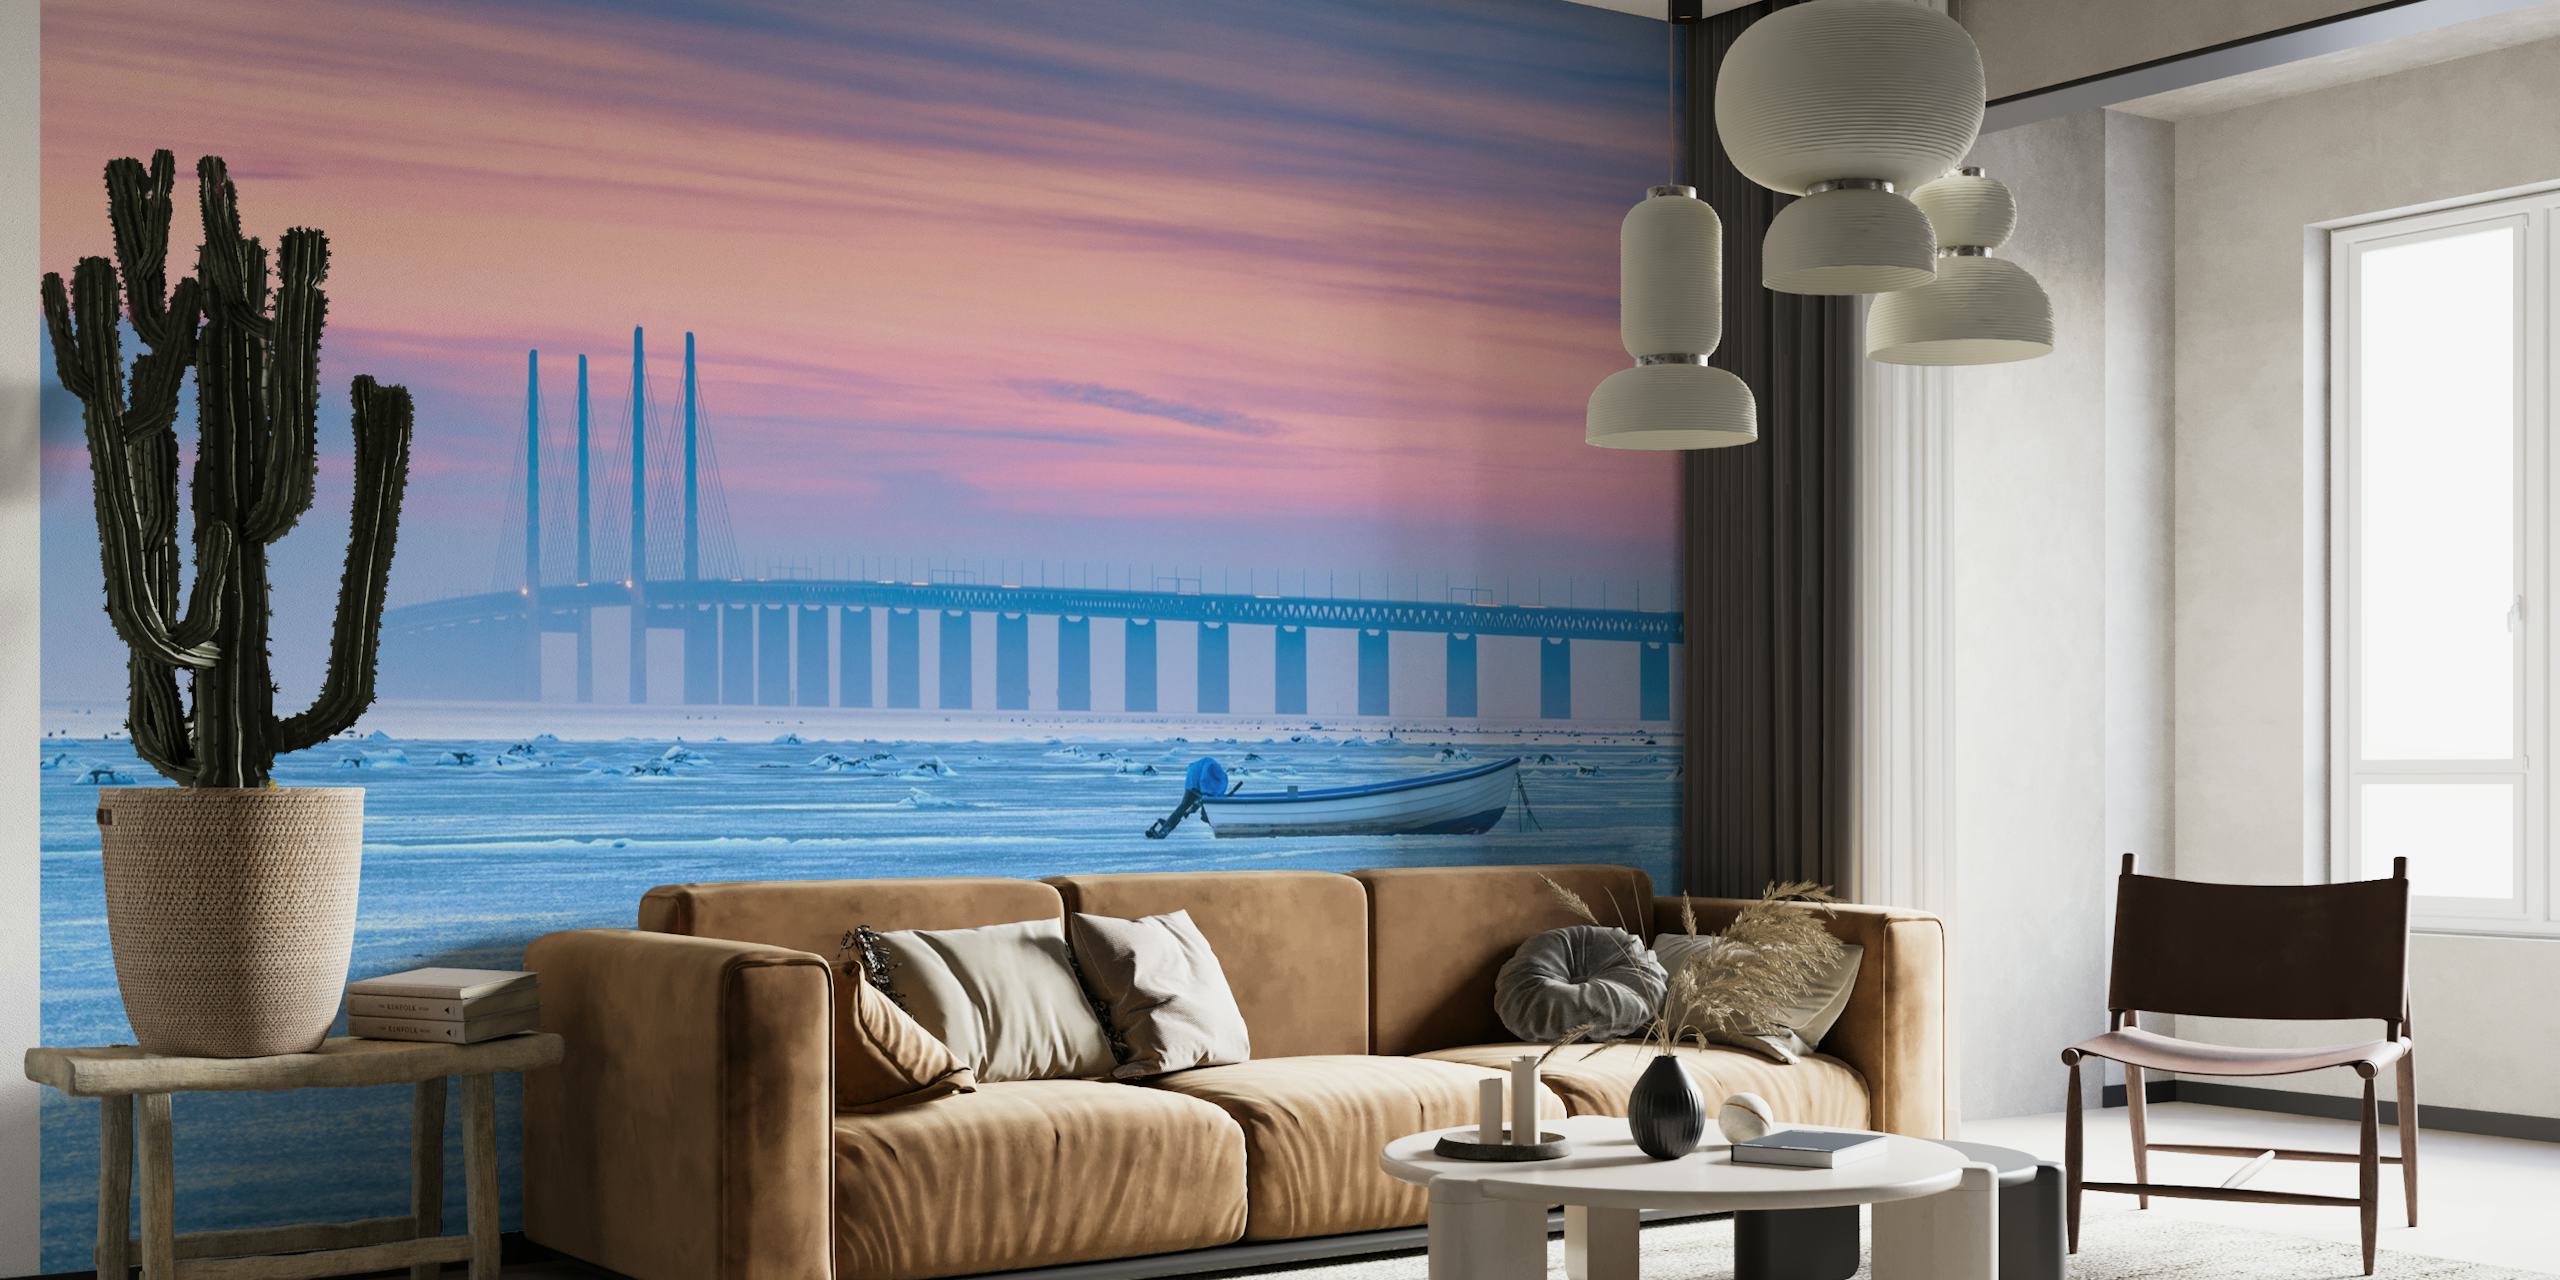 Un murale raffigurante un mare ghiacciato con un calmo cielo color pastello, un ponte lontano e una barca solitaria